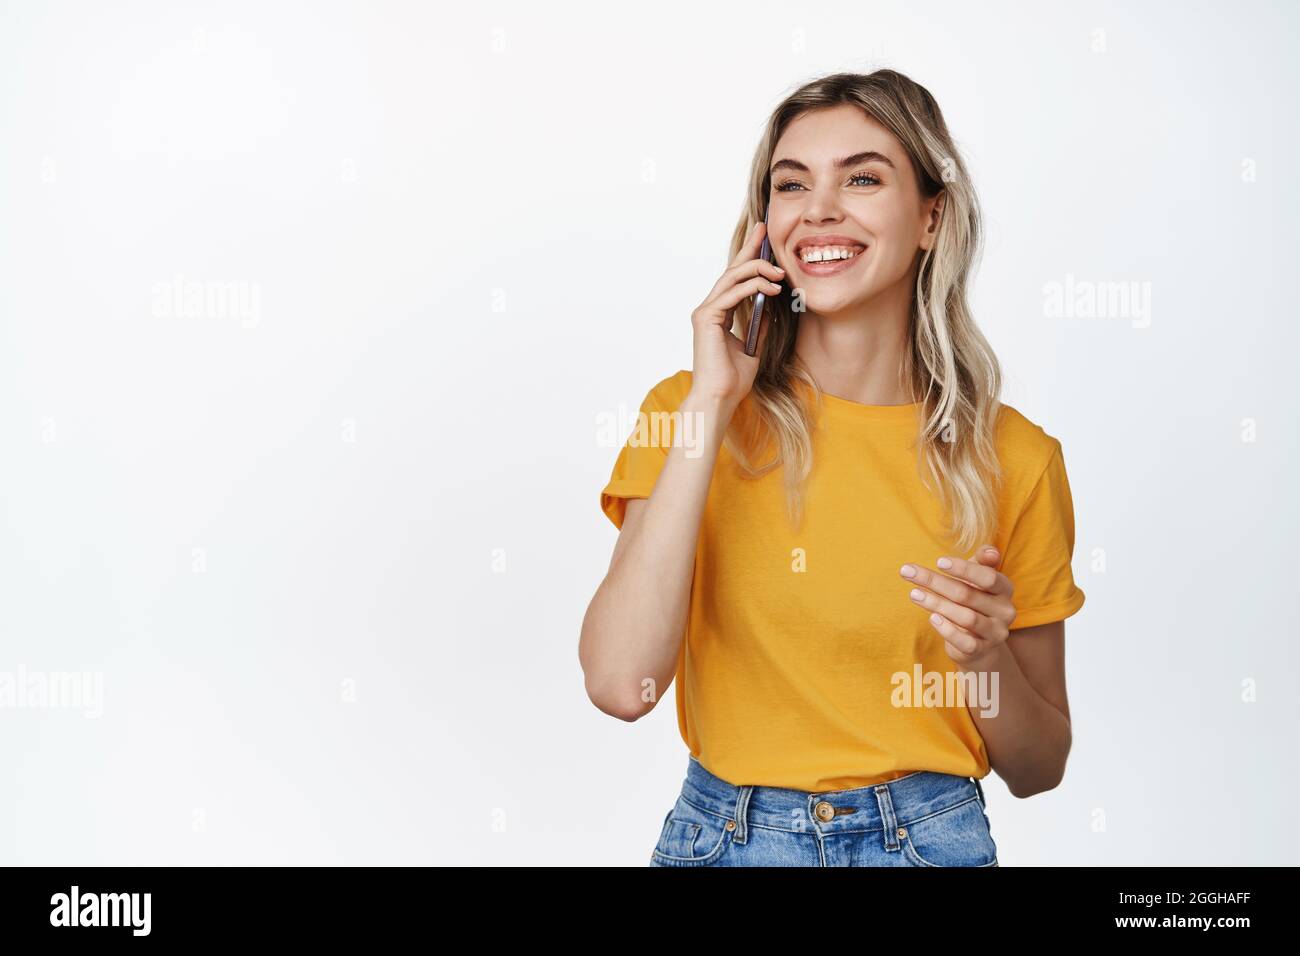 Concetto di tecnologia cellulare. Sorridente giovane donna che fa una telefonata, parla al cellulare con espressione del volto felice, indossa una maglietta gialla e dei jeans Foto Stock